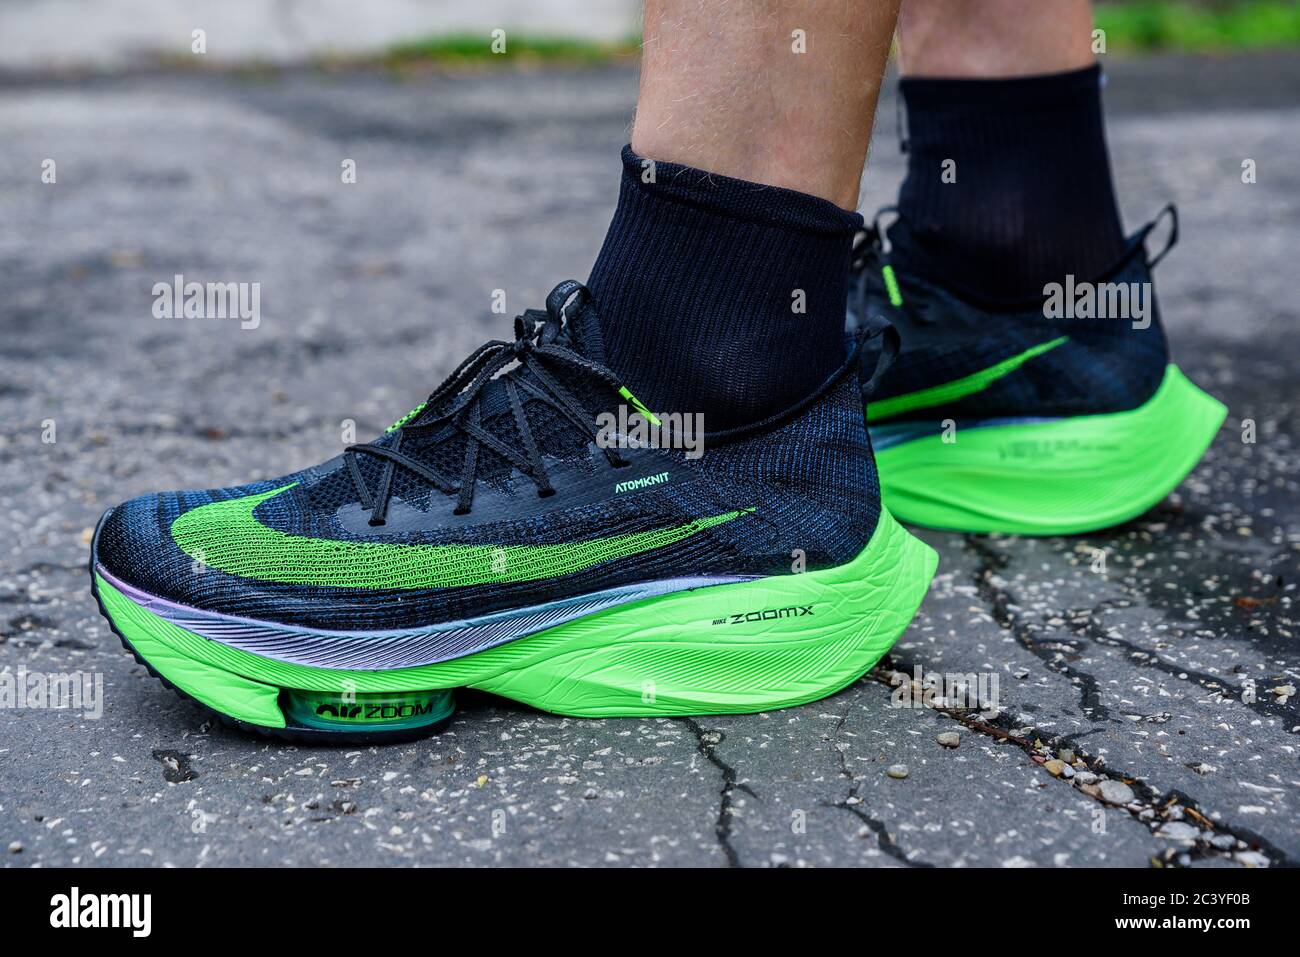 ROM, ITALIEN, JUNI 23. 2020: Nike Laufschuhe ALPHAFLY NEXT%. Umstrittener  grüner Leichtathletik-Schuh auf den Beinen des Profisportlers, der auf der  Straße läuft Stockfotografie - Alamy